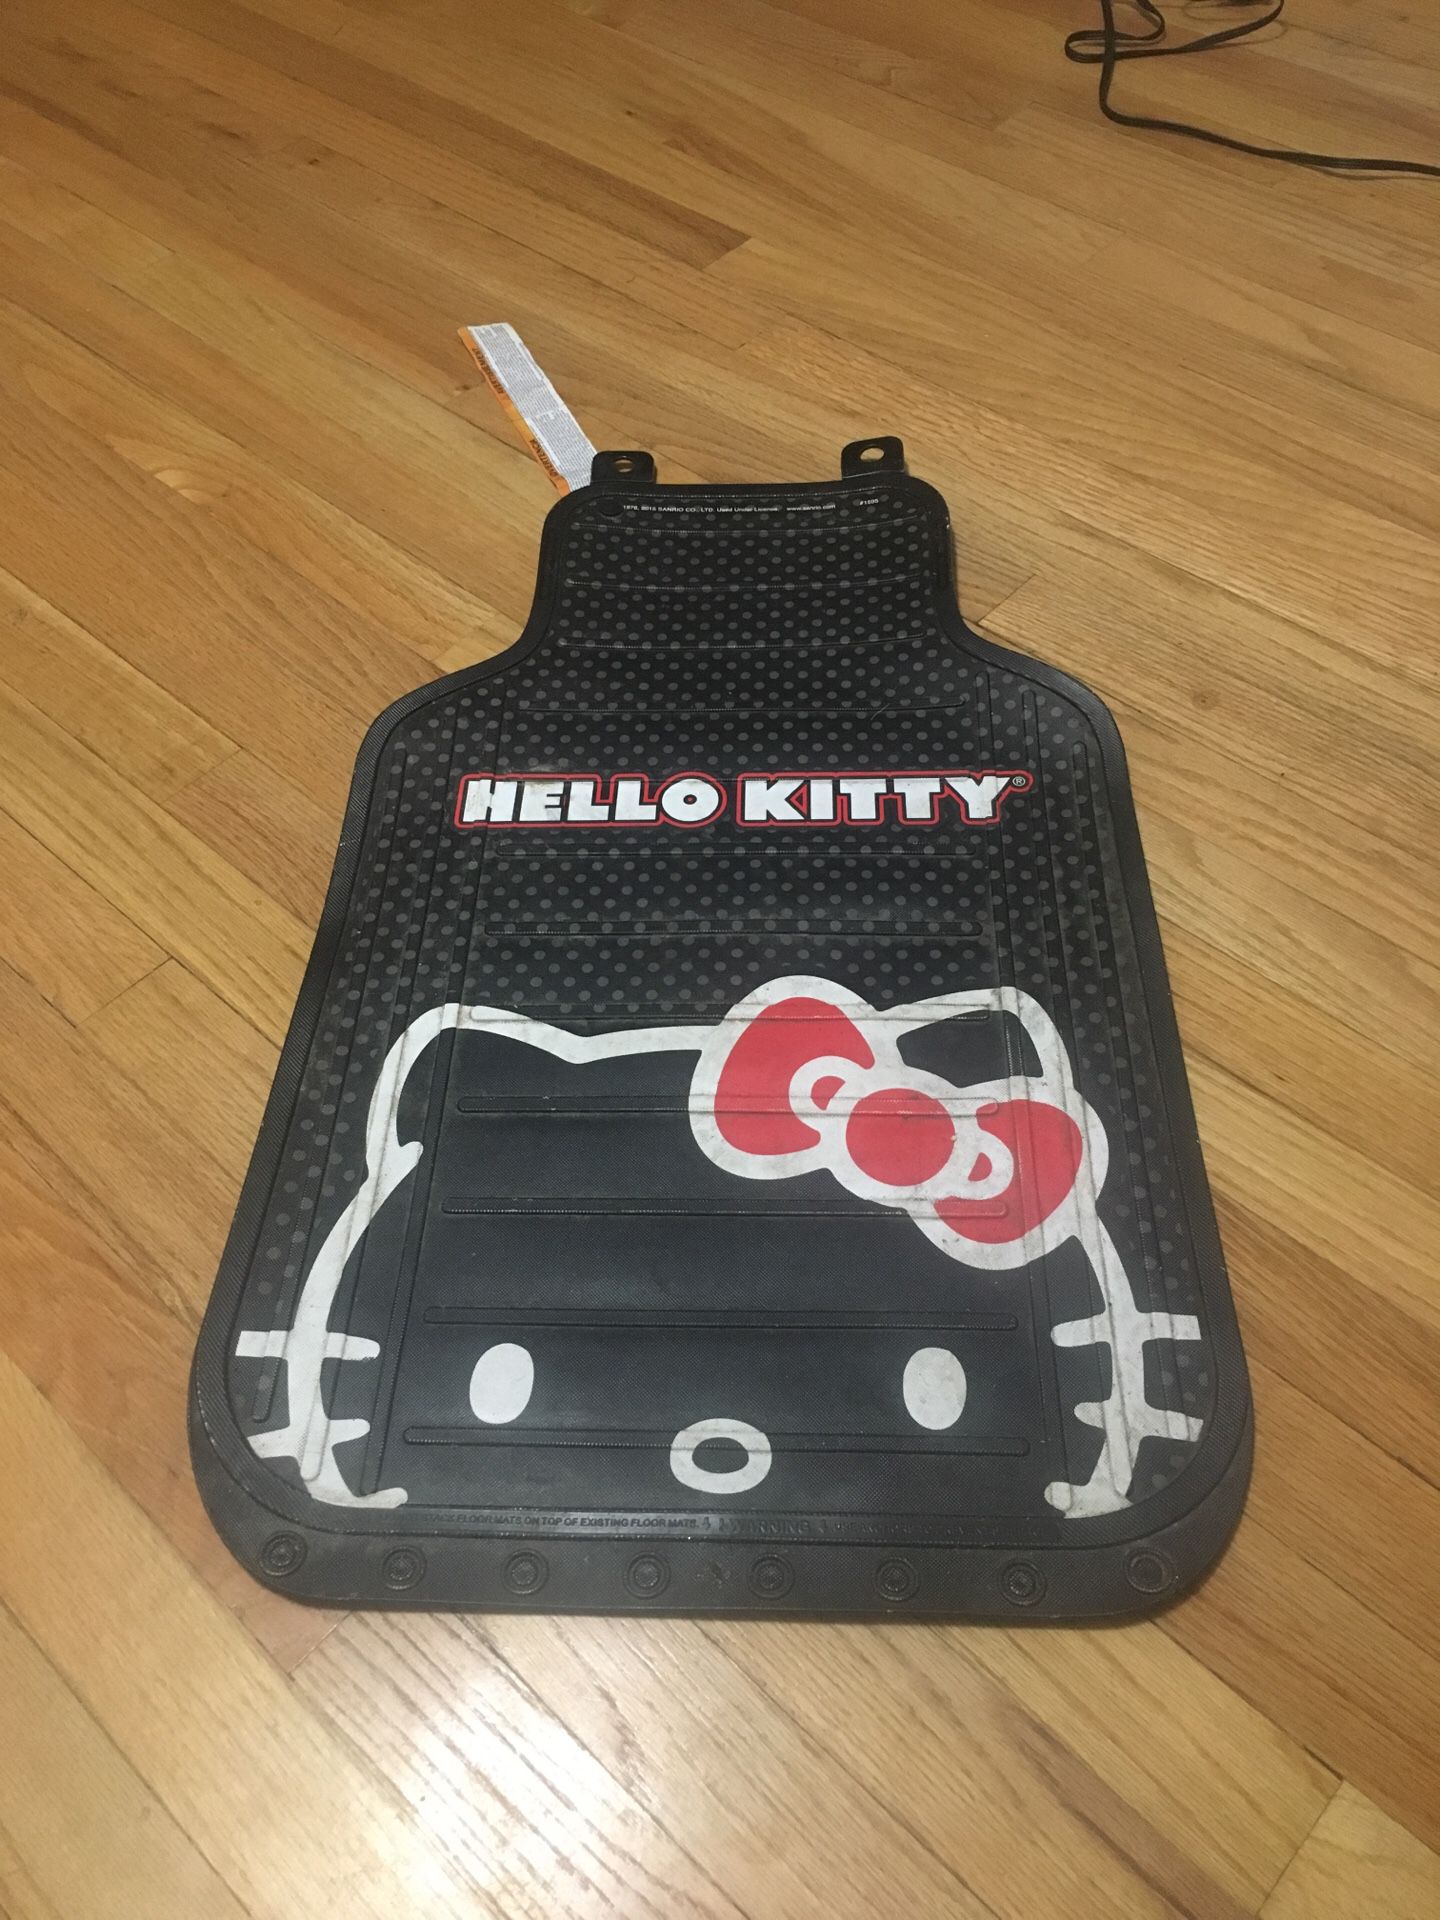 Hello kitty floor mat (only 1)